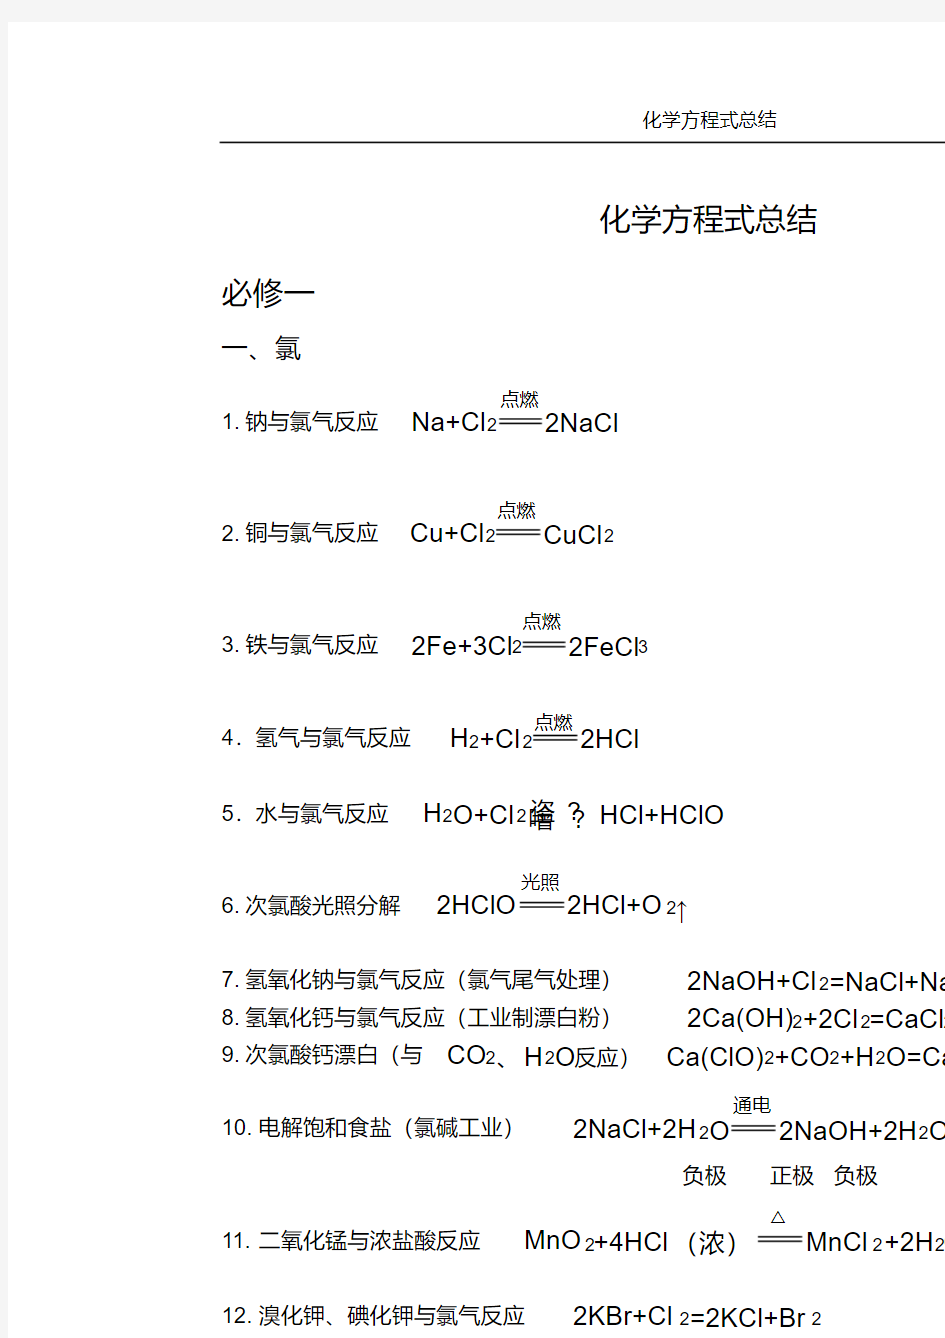 (完整版)苏教版高中化学方程式总结